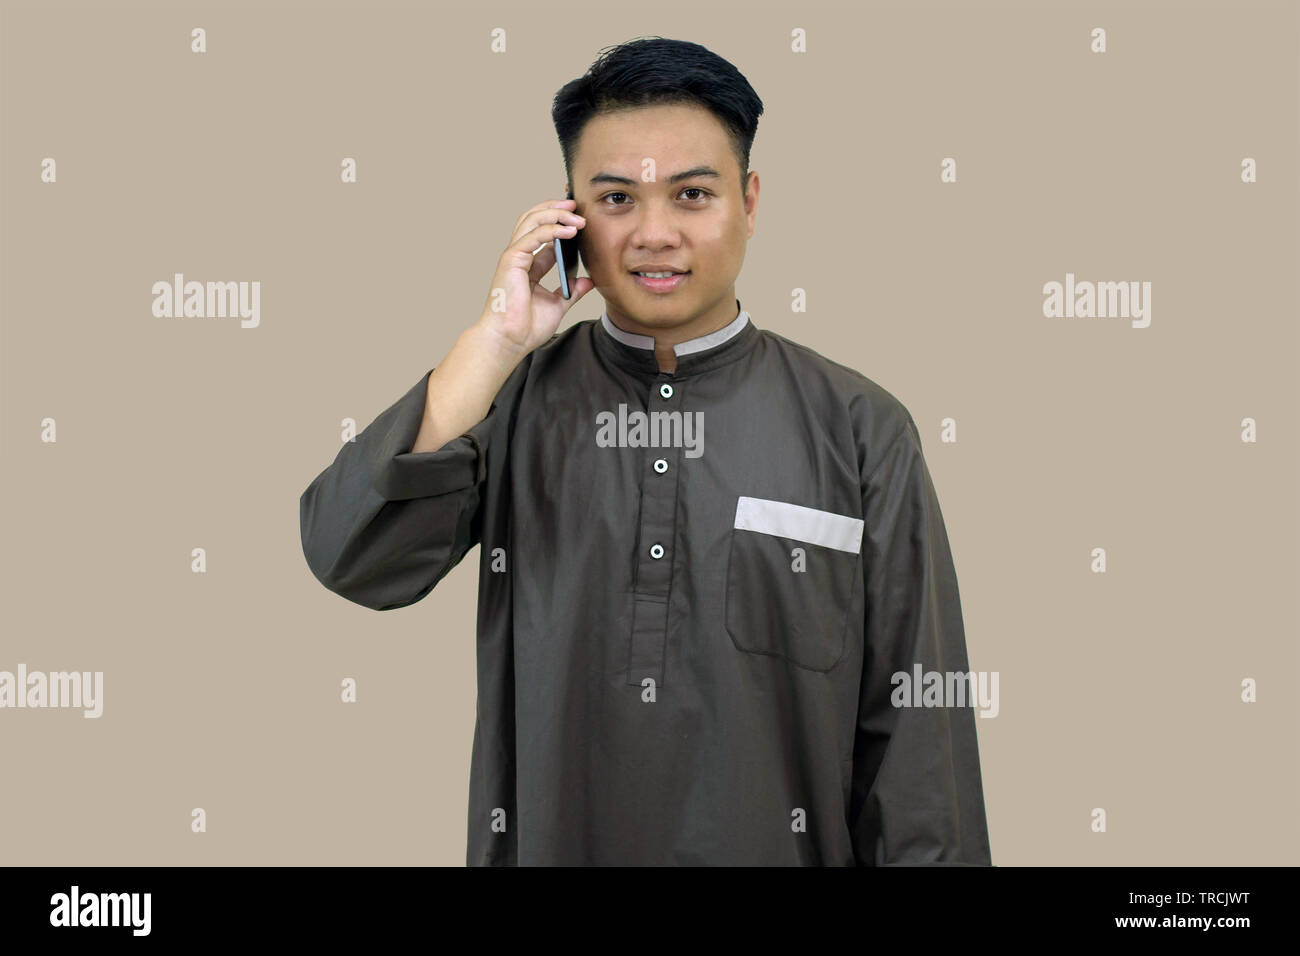 Portrait de l'homme posant dans la jeunesse musulmane tenue musulmane debout devant la caméra, en utilisant un téléphone intelligent isolé dans brown Banque D'Images